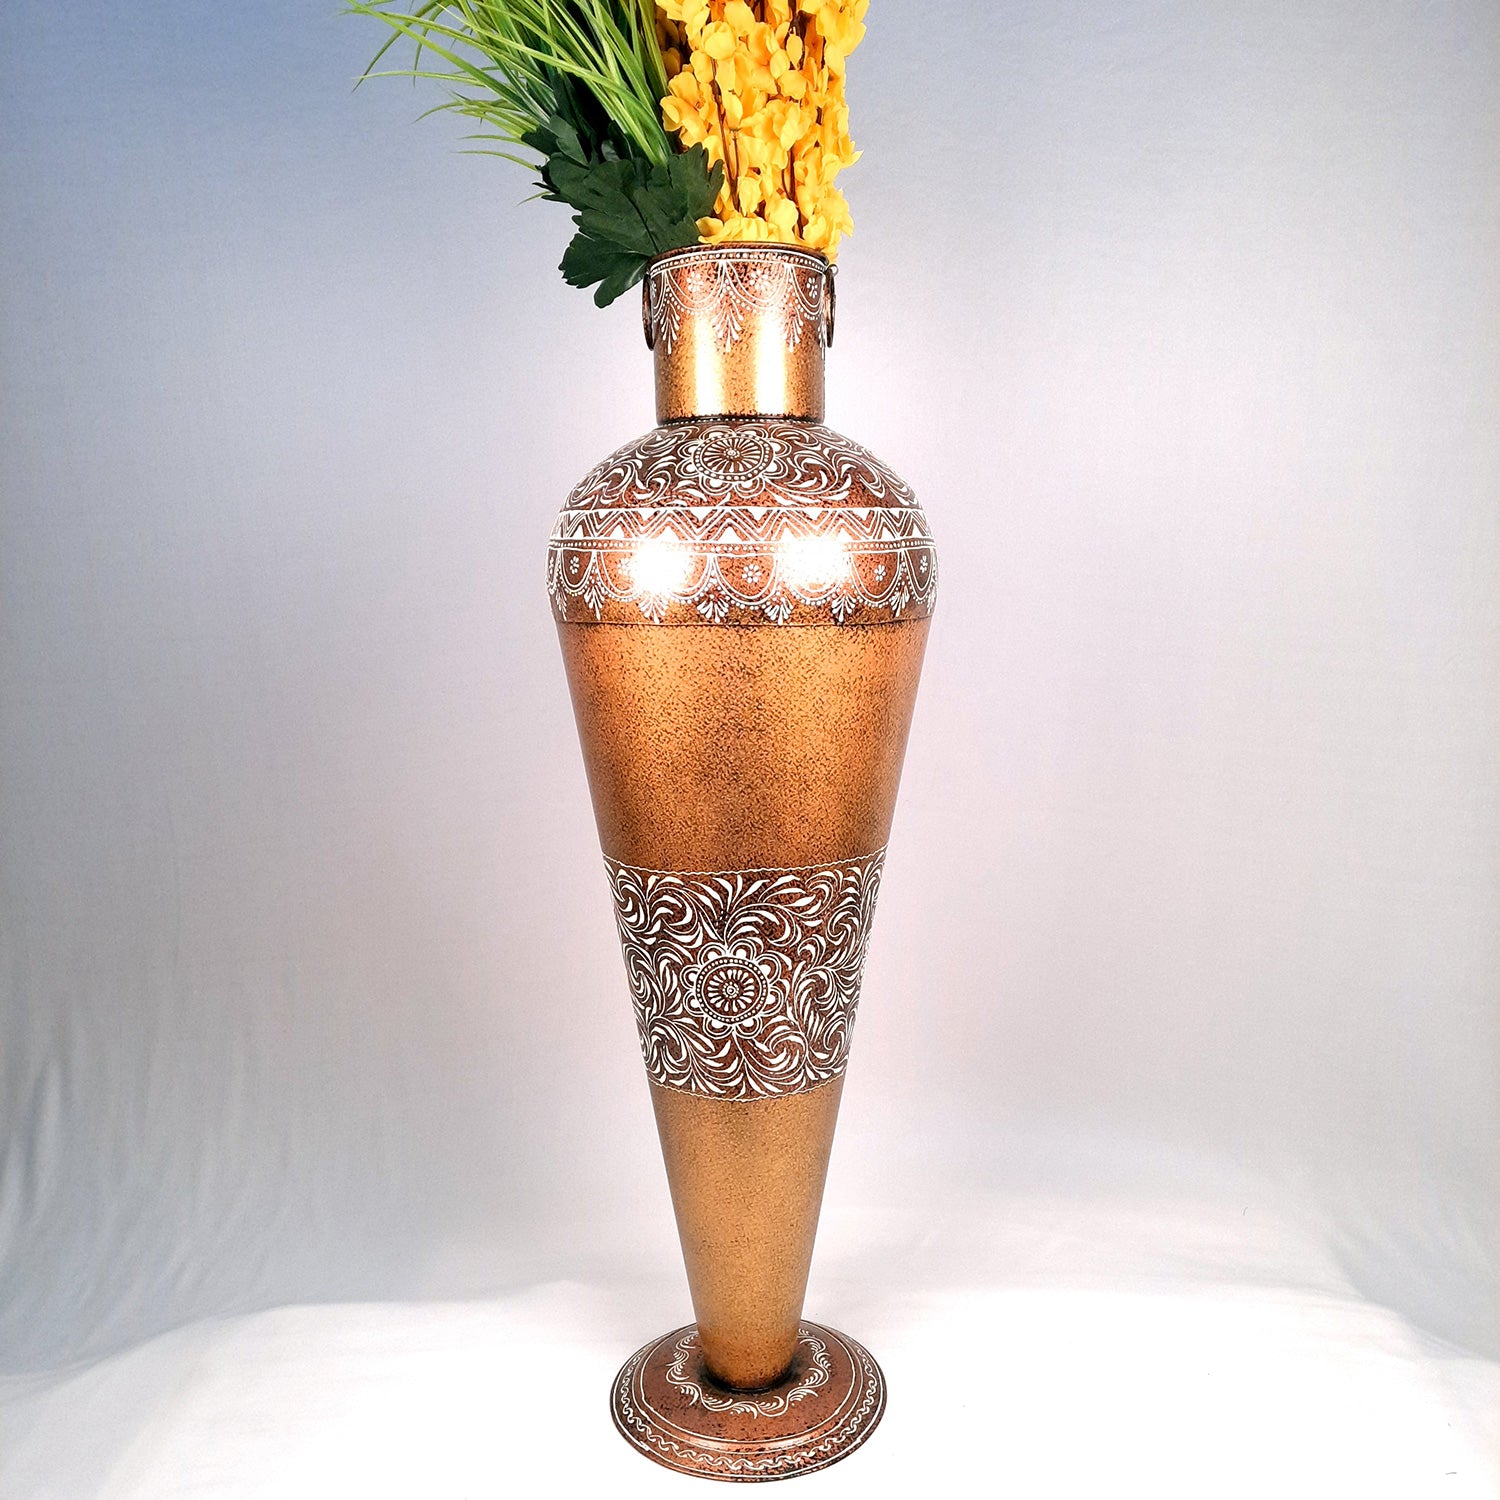 lower Vase for Corner Decoration | Big Flower Pot - for Home, Living Room, Hallway, Entrance Decor - 36 Inch - Apkamart